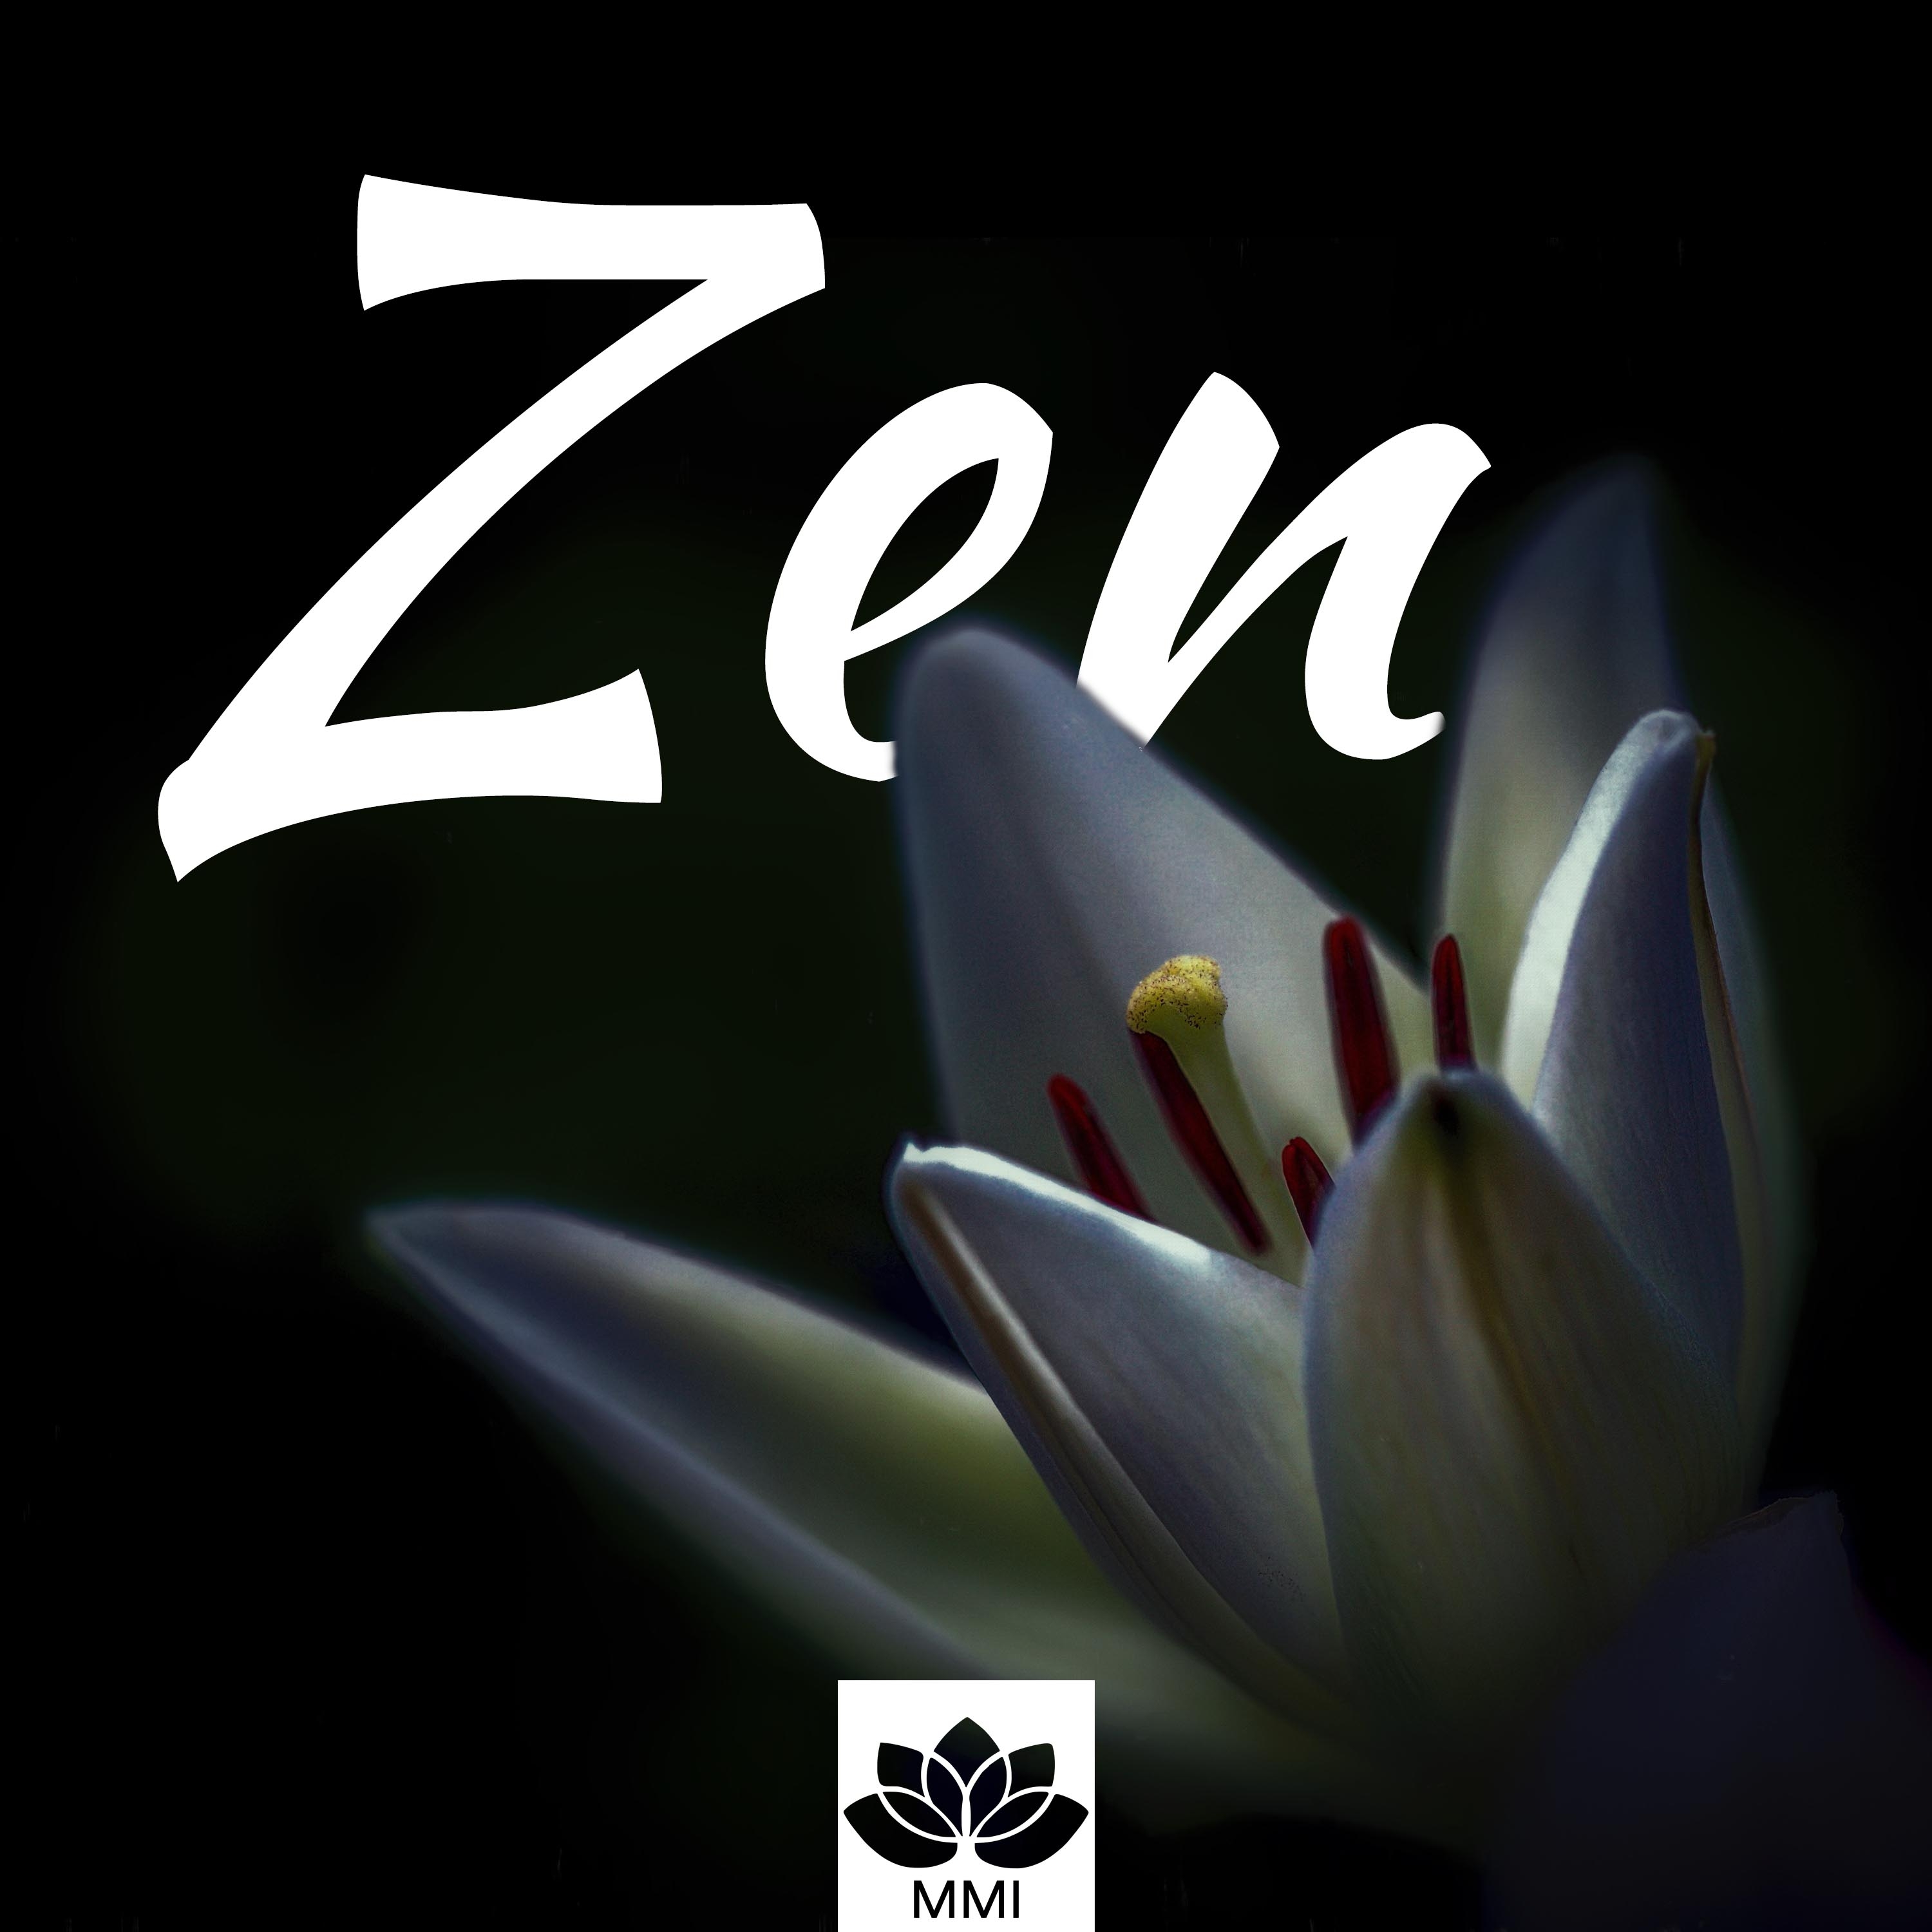 Zen - Musica Zen, Canzoni Strumentali Asiatiche, Suoni della Natura, Rilassamento del Corpo e della Mente